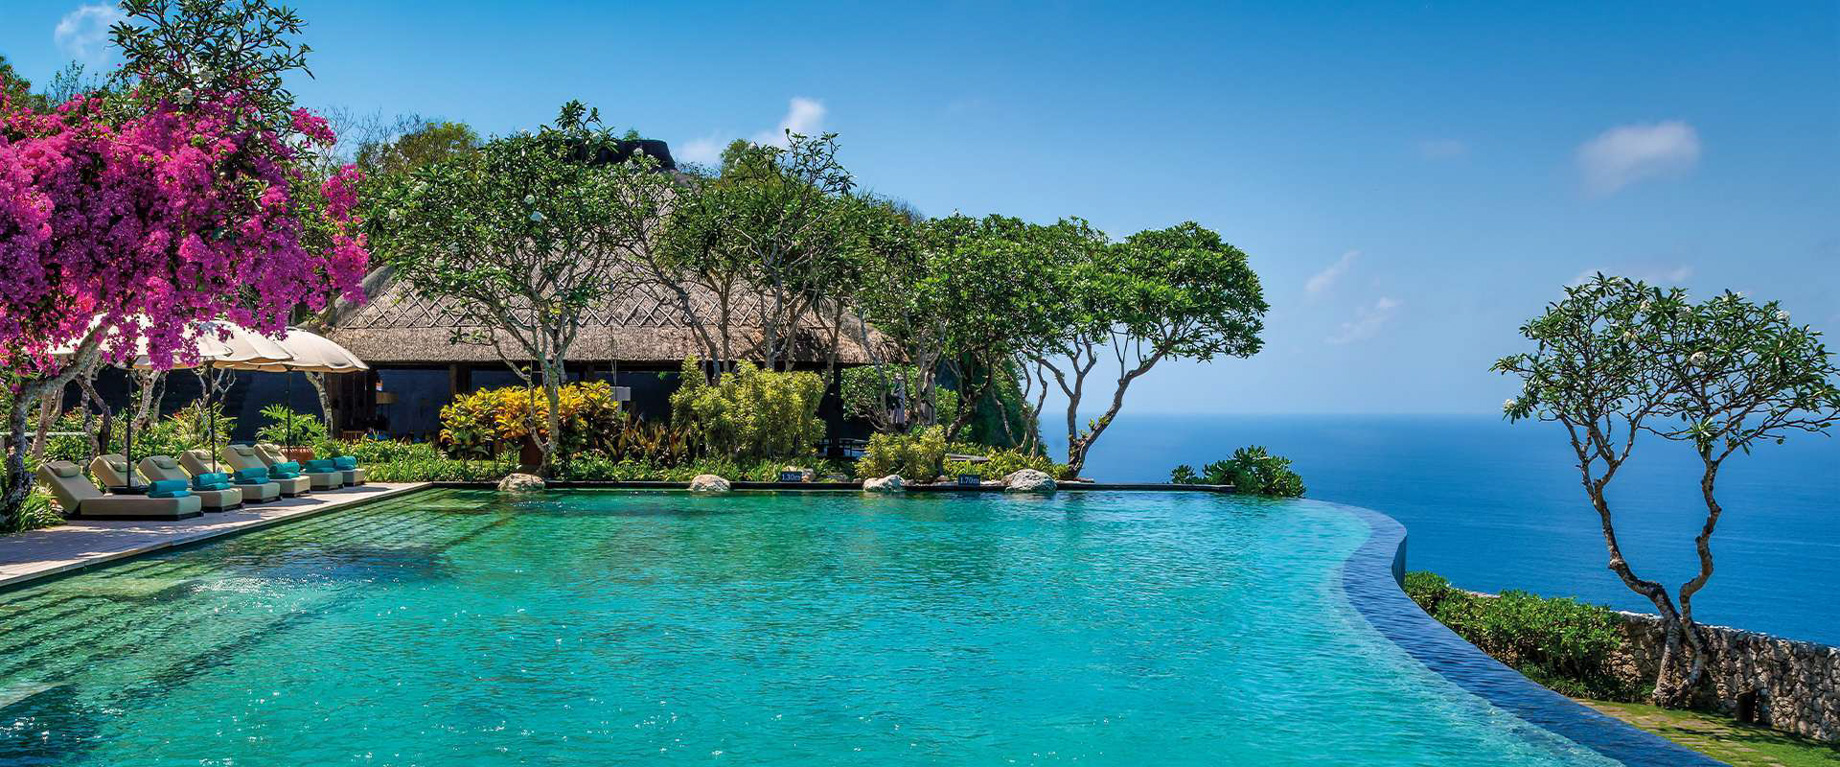 Bvlgari Resort Bali - Uluwatu, Bali, Indonesia - Infinity Pool Ocean View